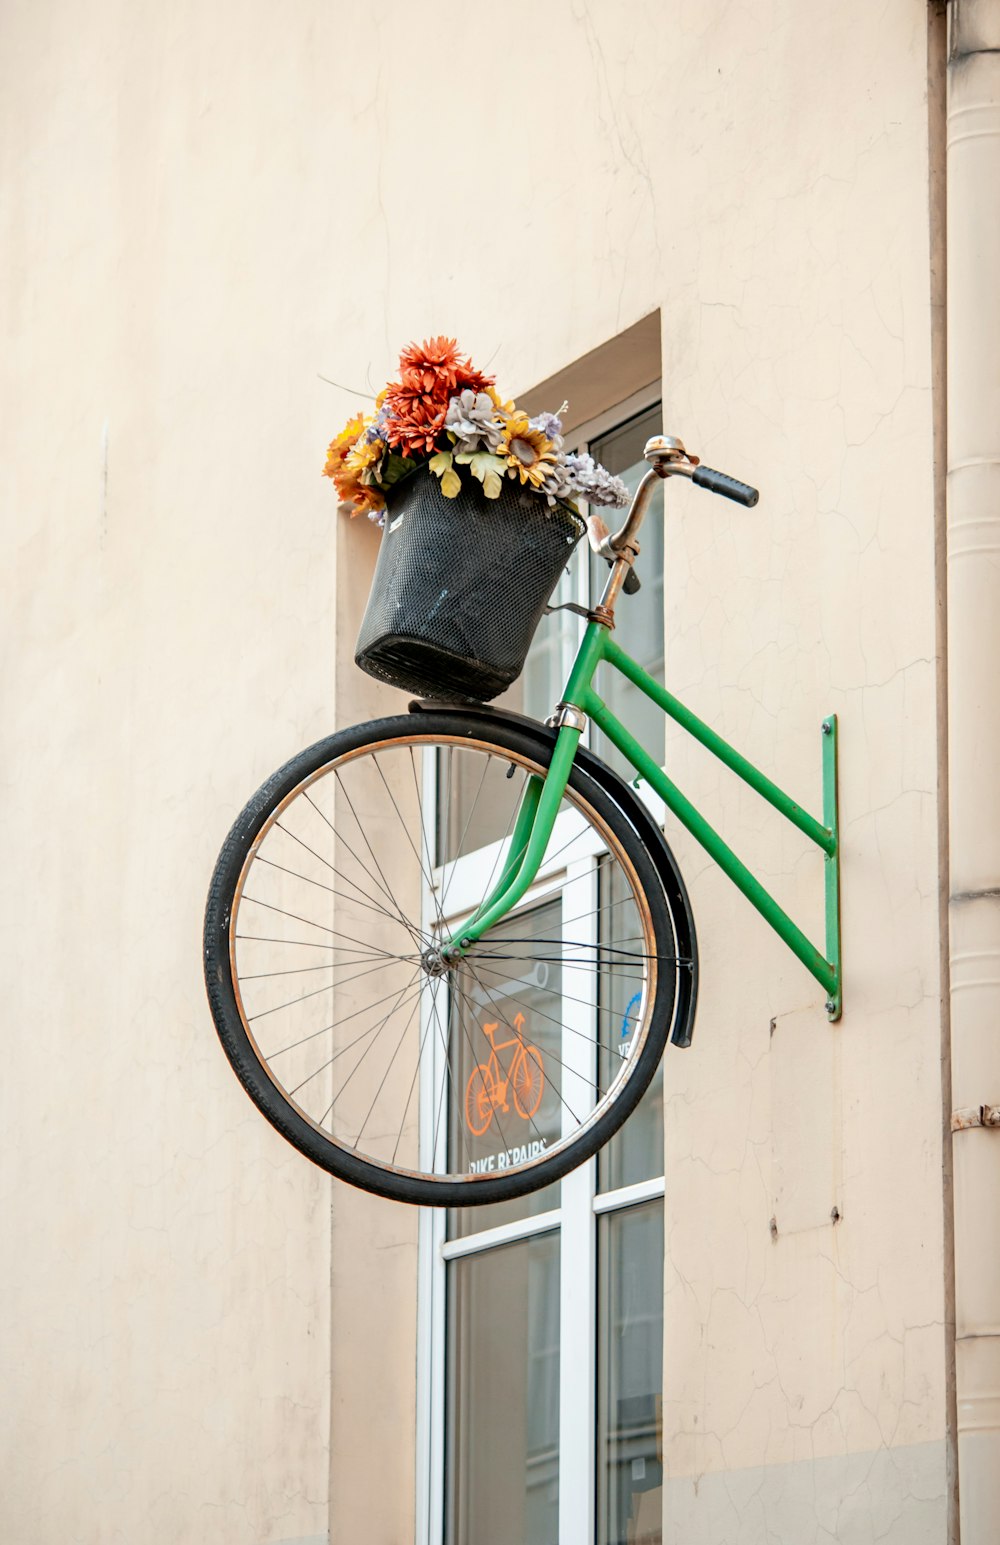 Bicicleta urbana verde con flores